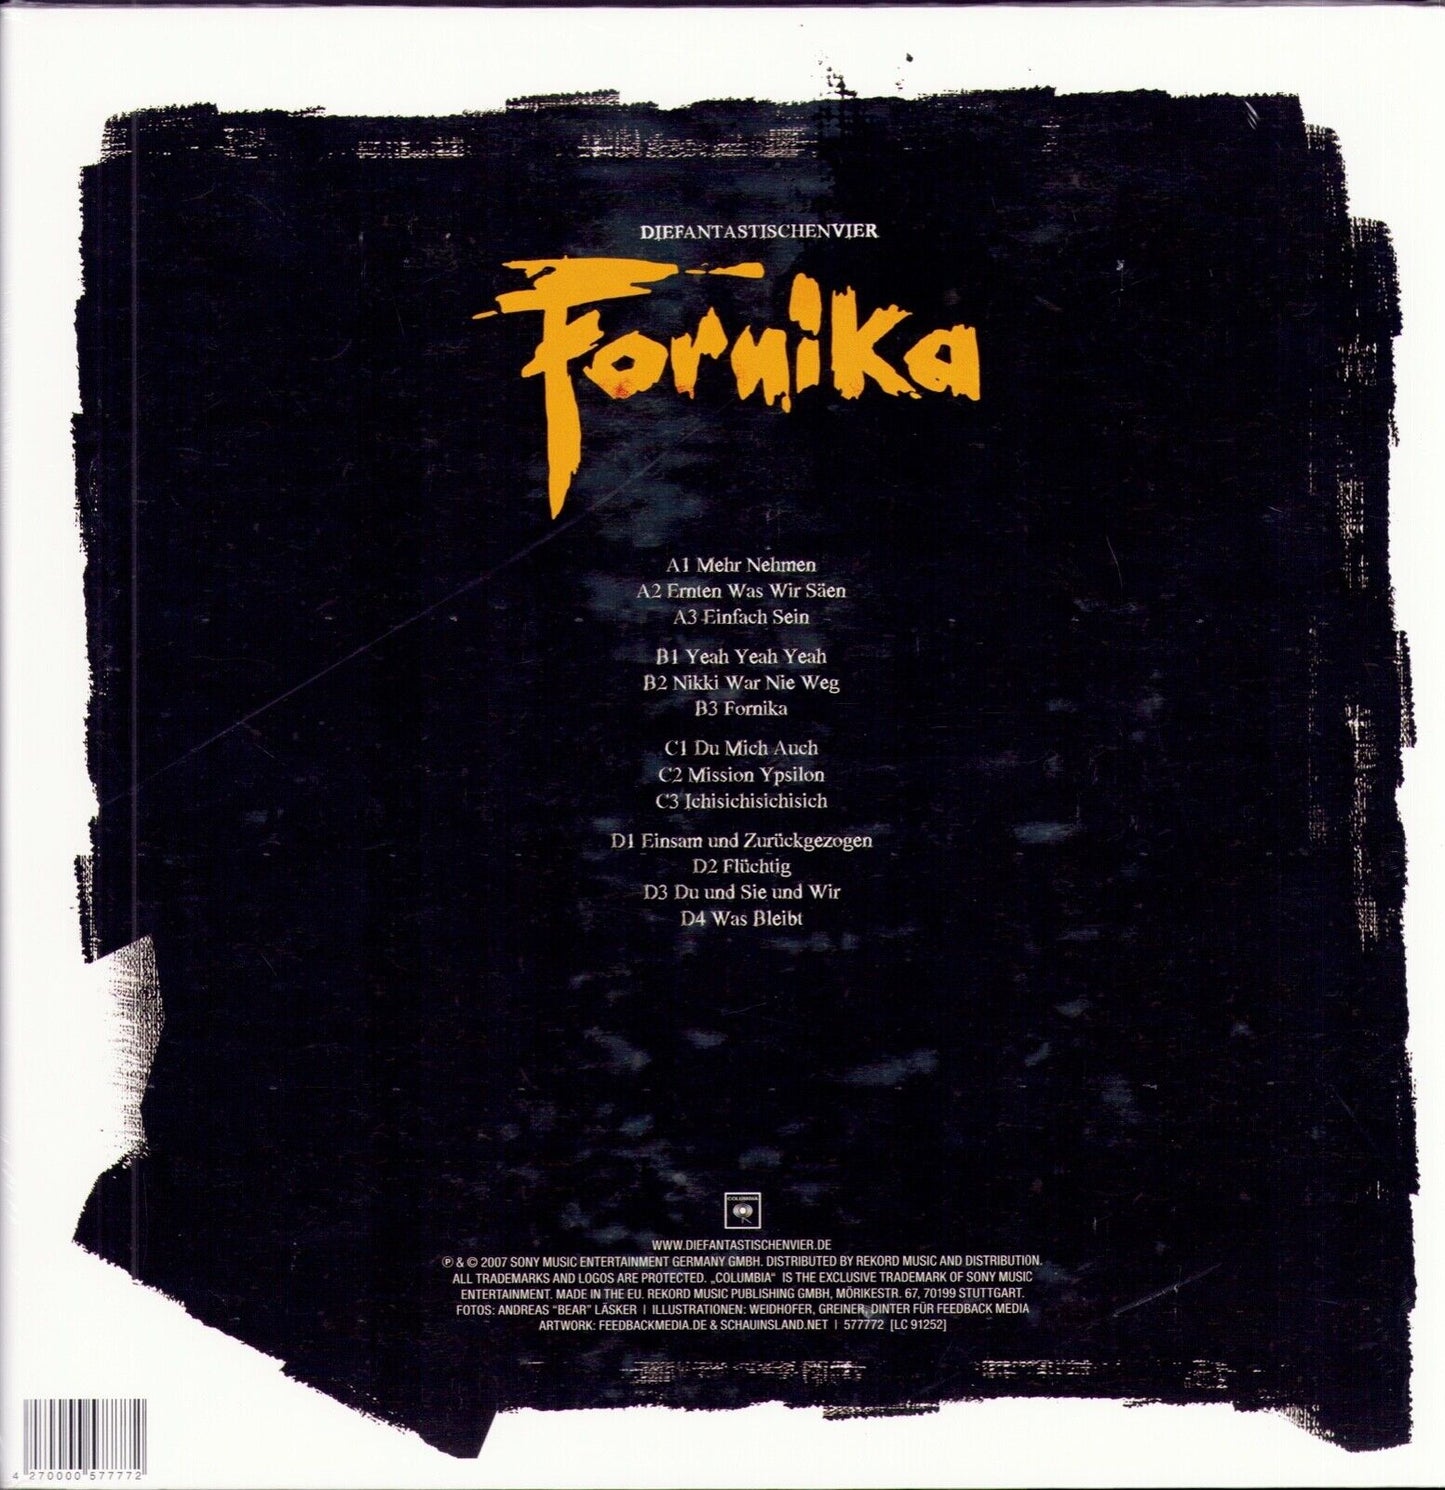 Die Fantastischen Vier - Fornika Vinyl 2LP